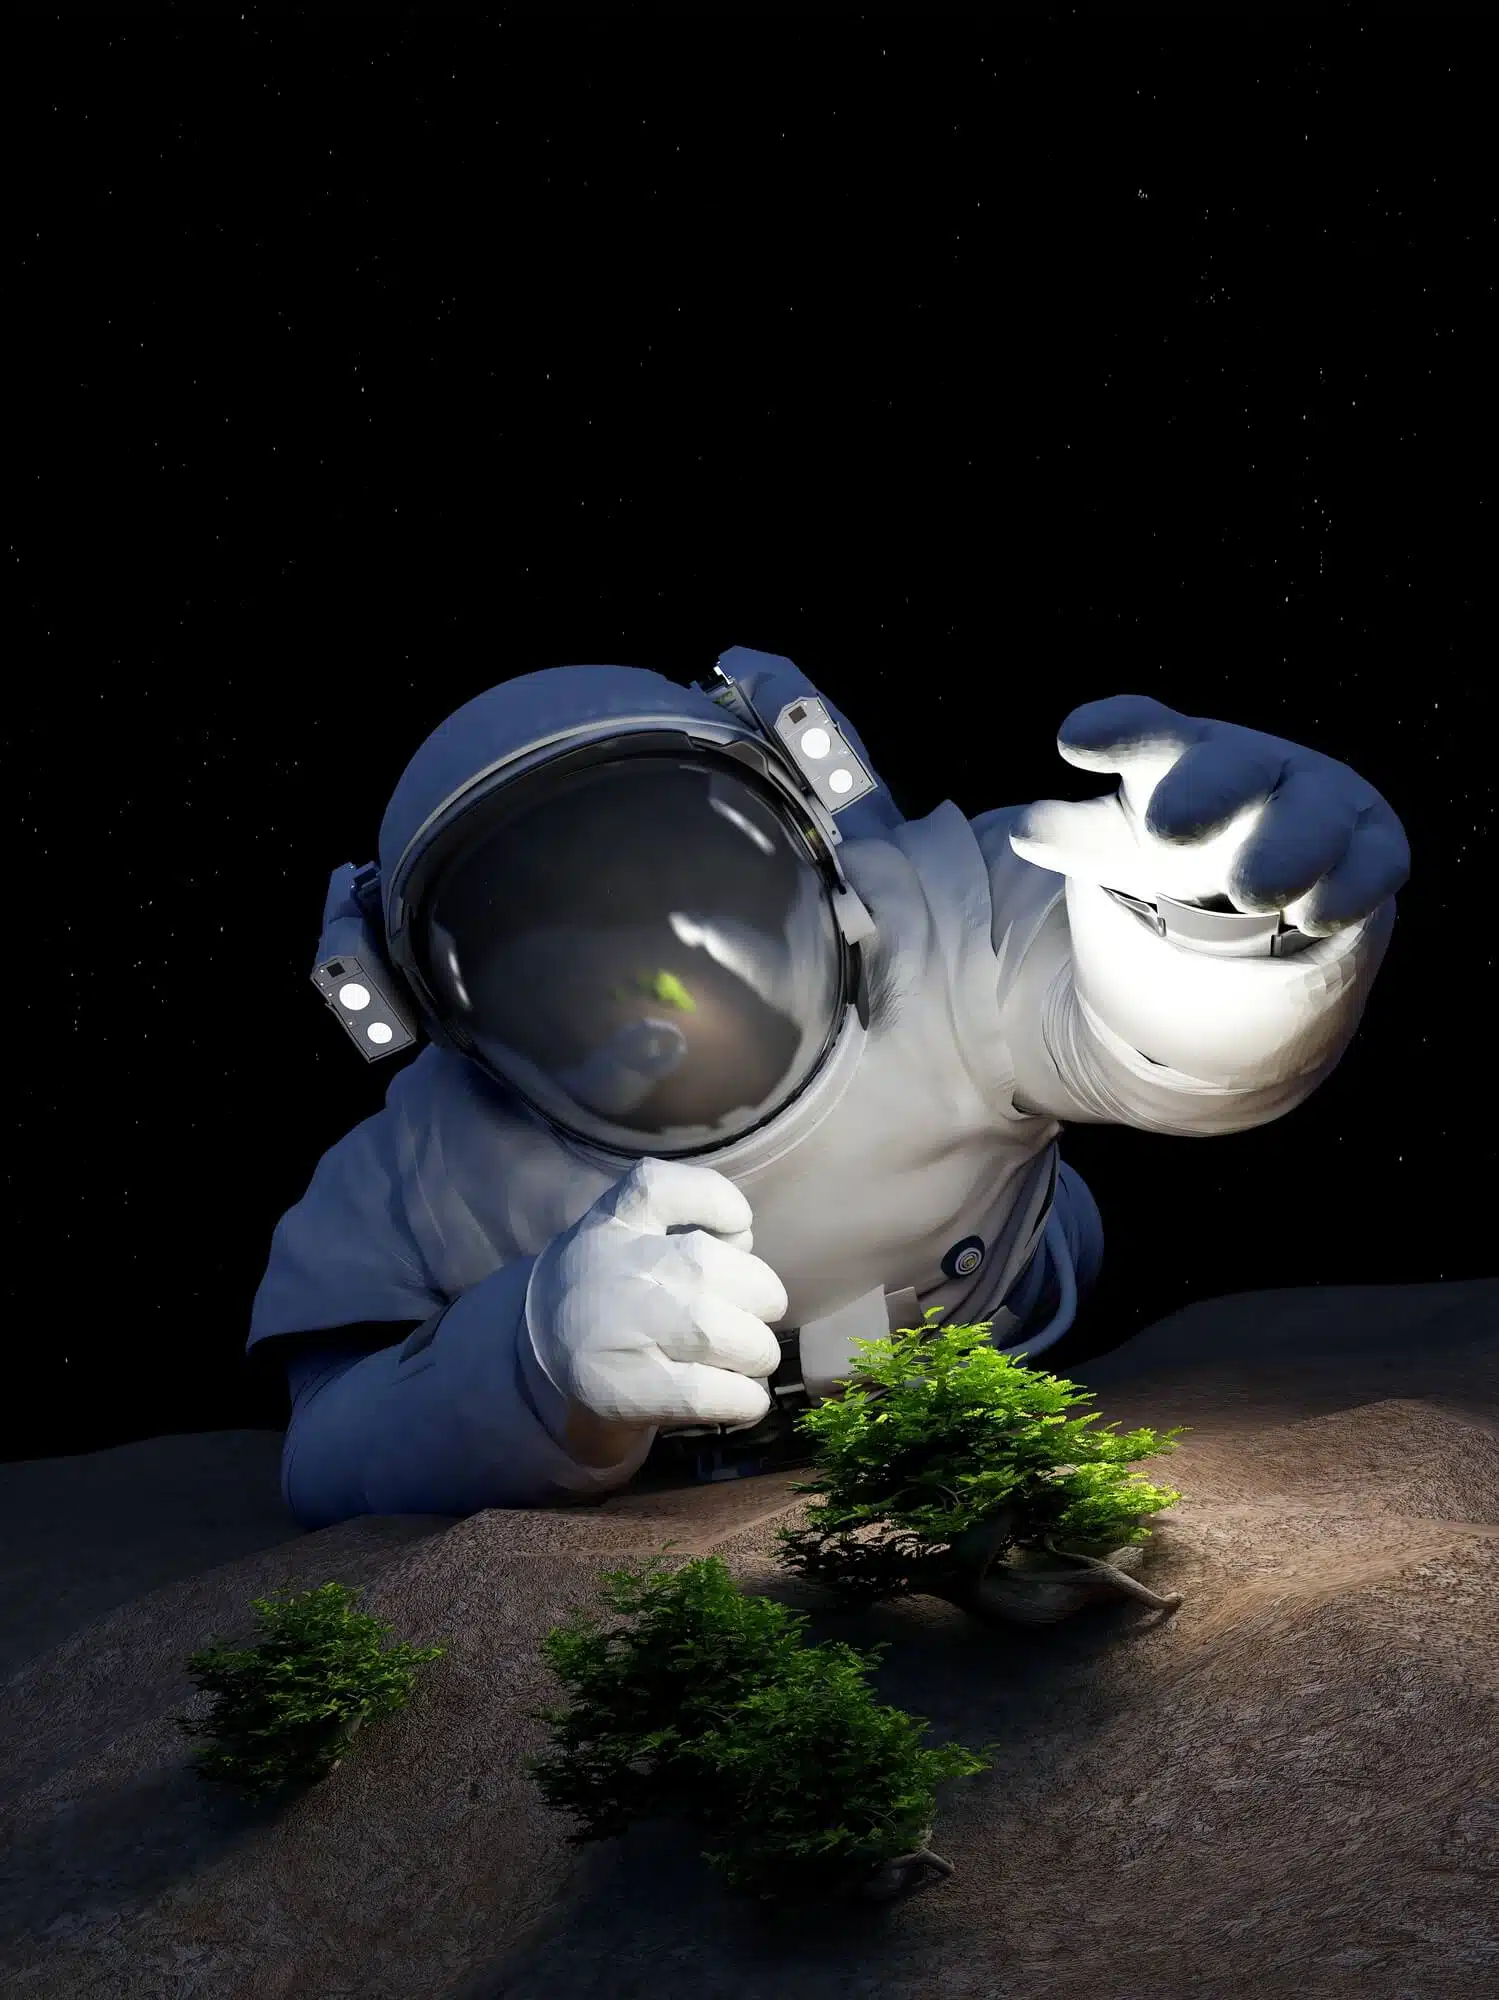 אסטרונאוט מגדל צמחים על הירח. <a href="https://depositphotos.com. ">המחשה: depositphotos.com</a>